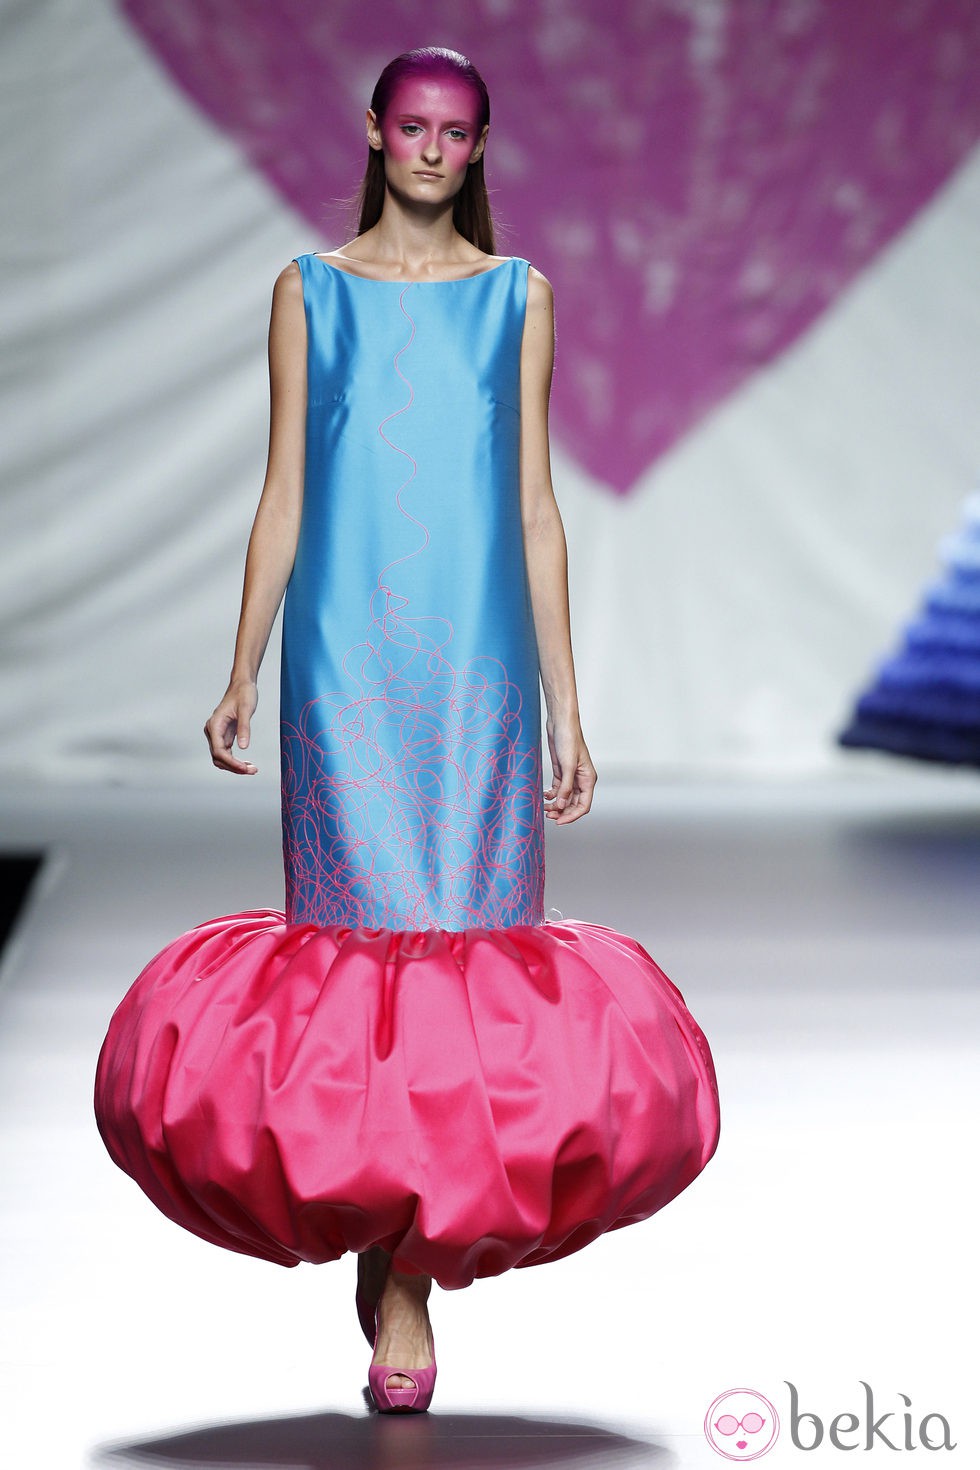 Vestido azul de la colección primavera/verano 2014 de Ágatha Ruiz de la Prada en Madrid Fashion Week